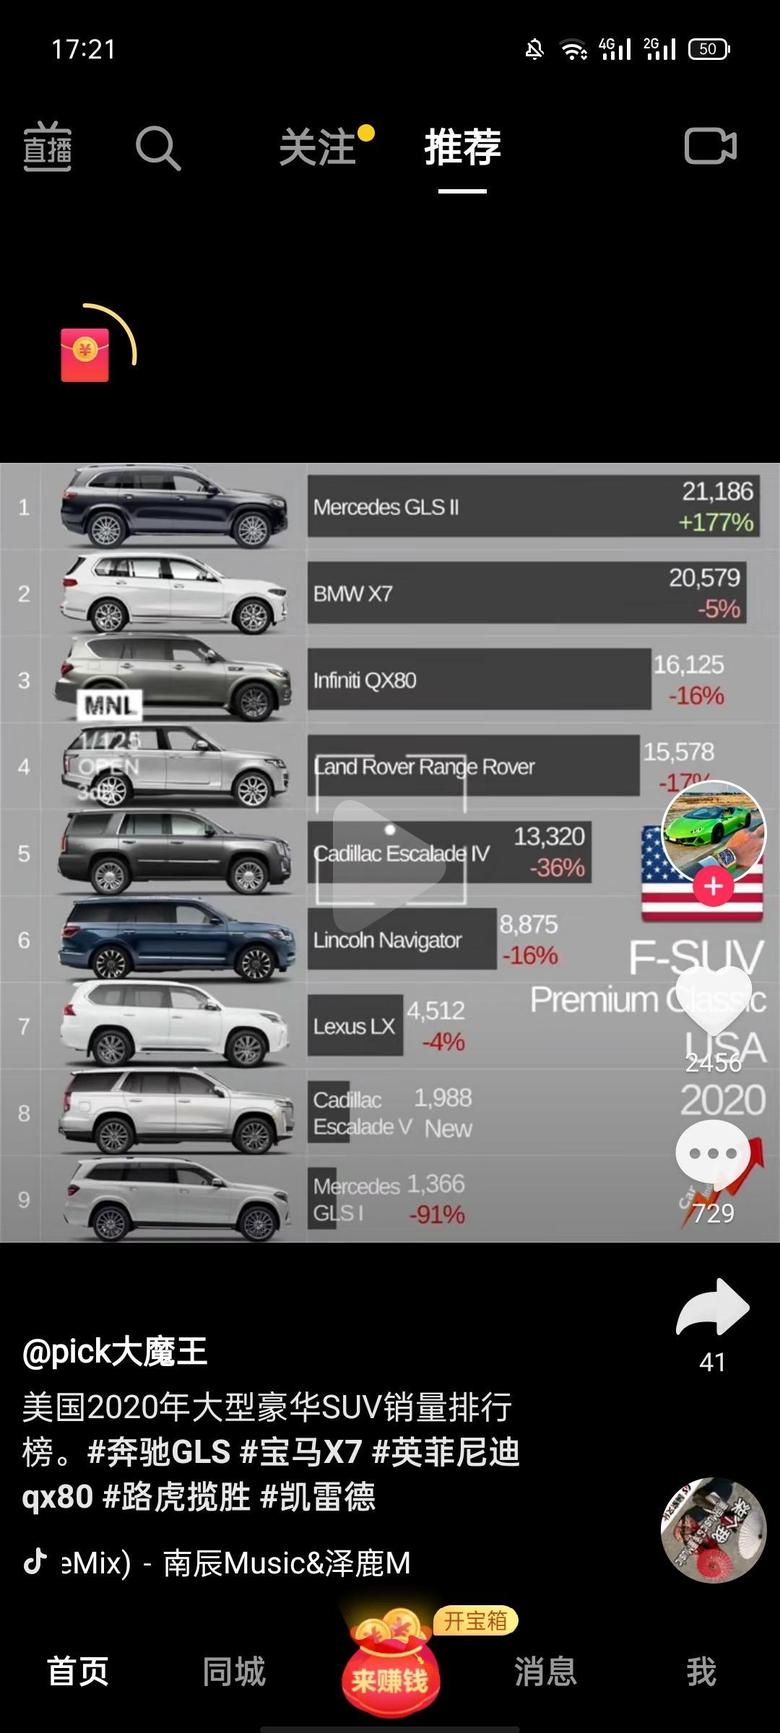 英菲尼迪qx50英菲尼迪qx80夺得大型豪华SUV第三名，去年是第一名！是国人不懂车了，什么雷克萨斯在百万级suv上都是弟弟，国内却要加价卖。。。